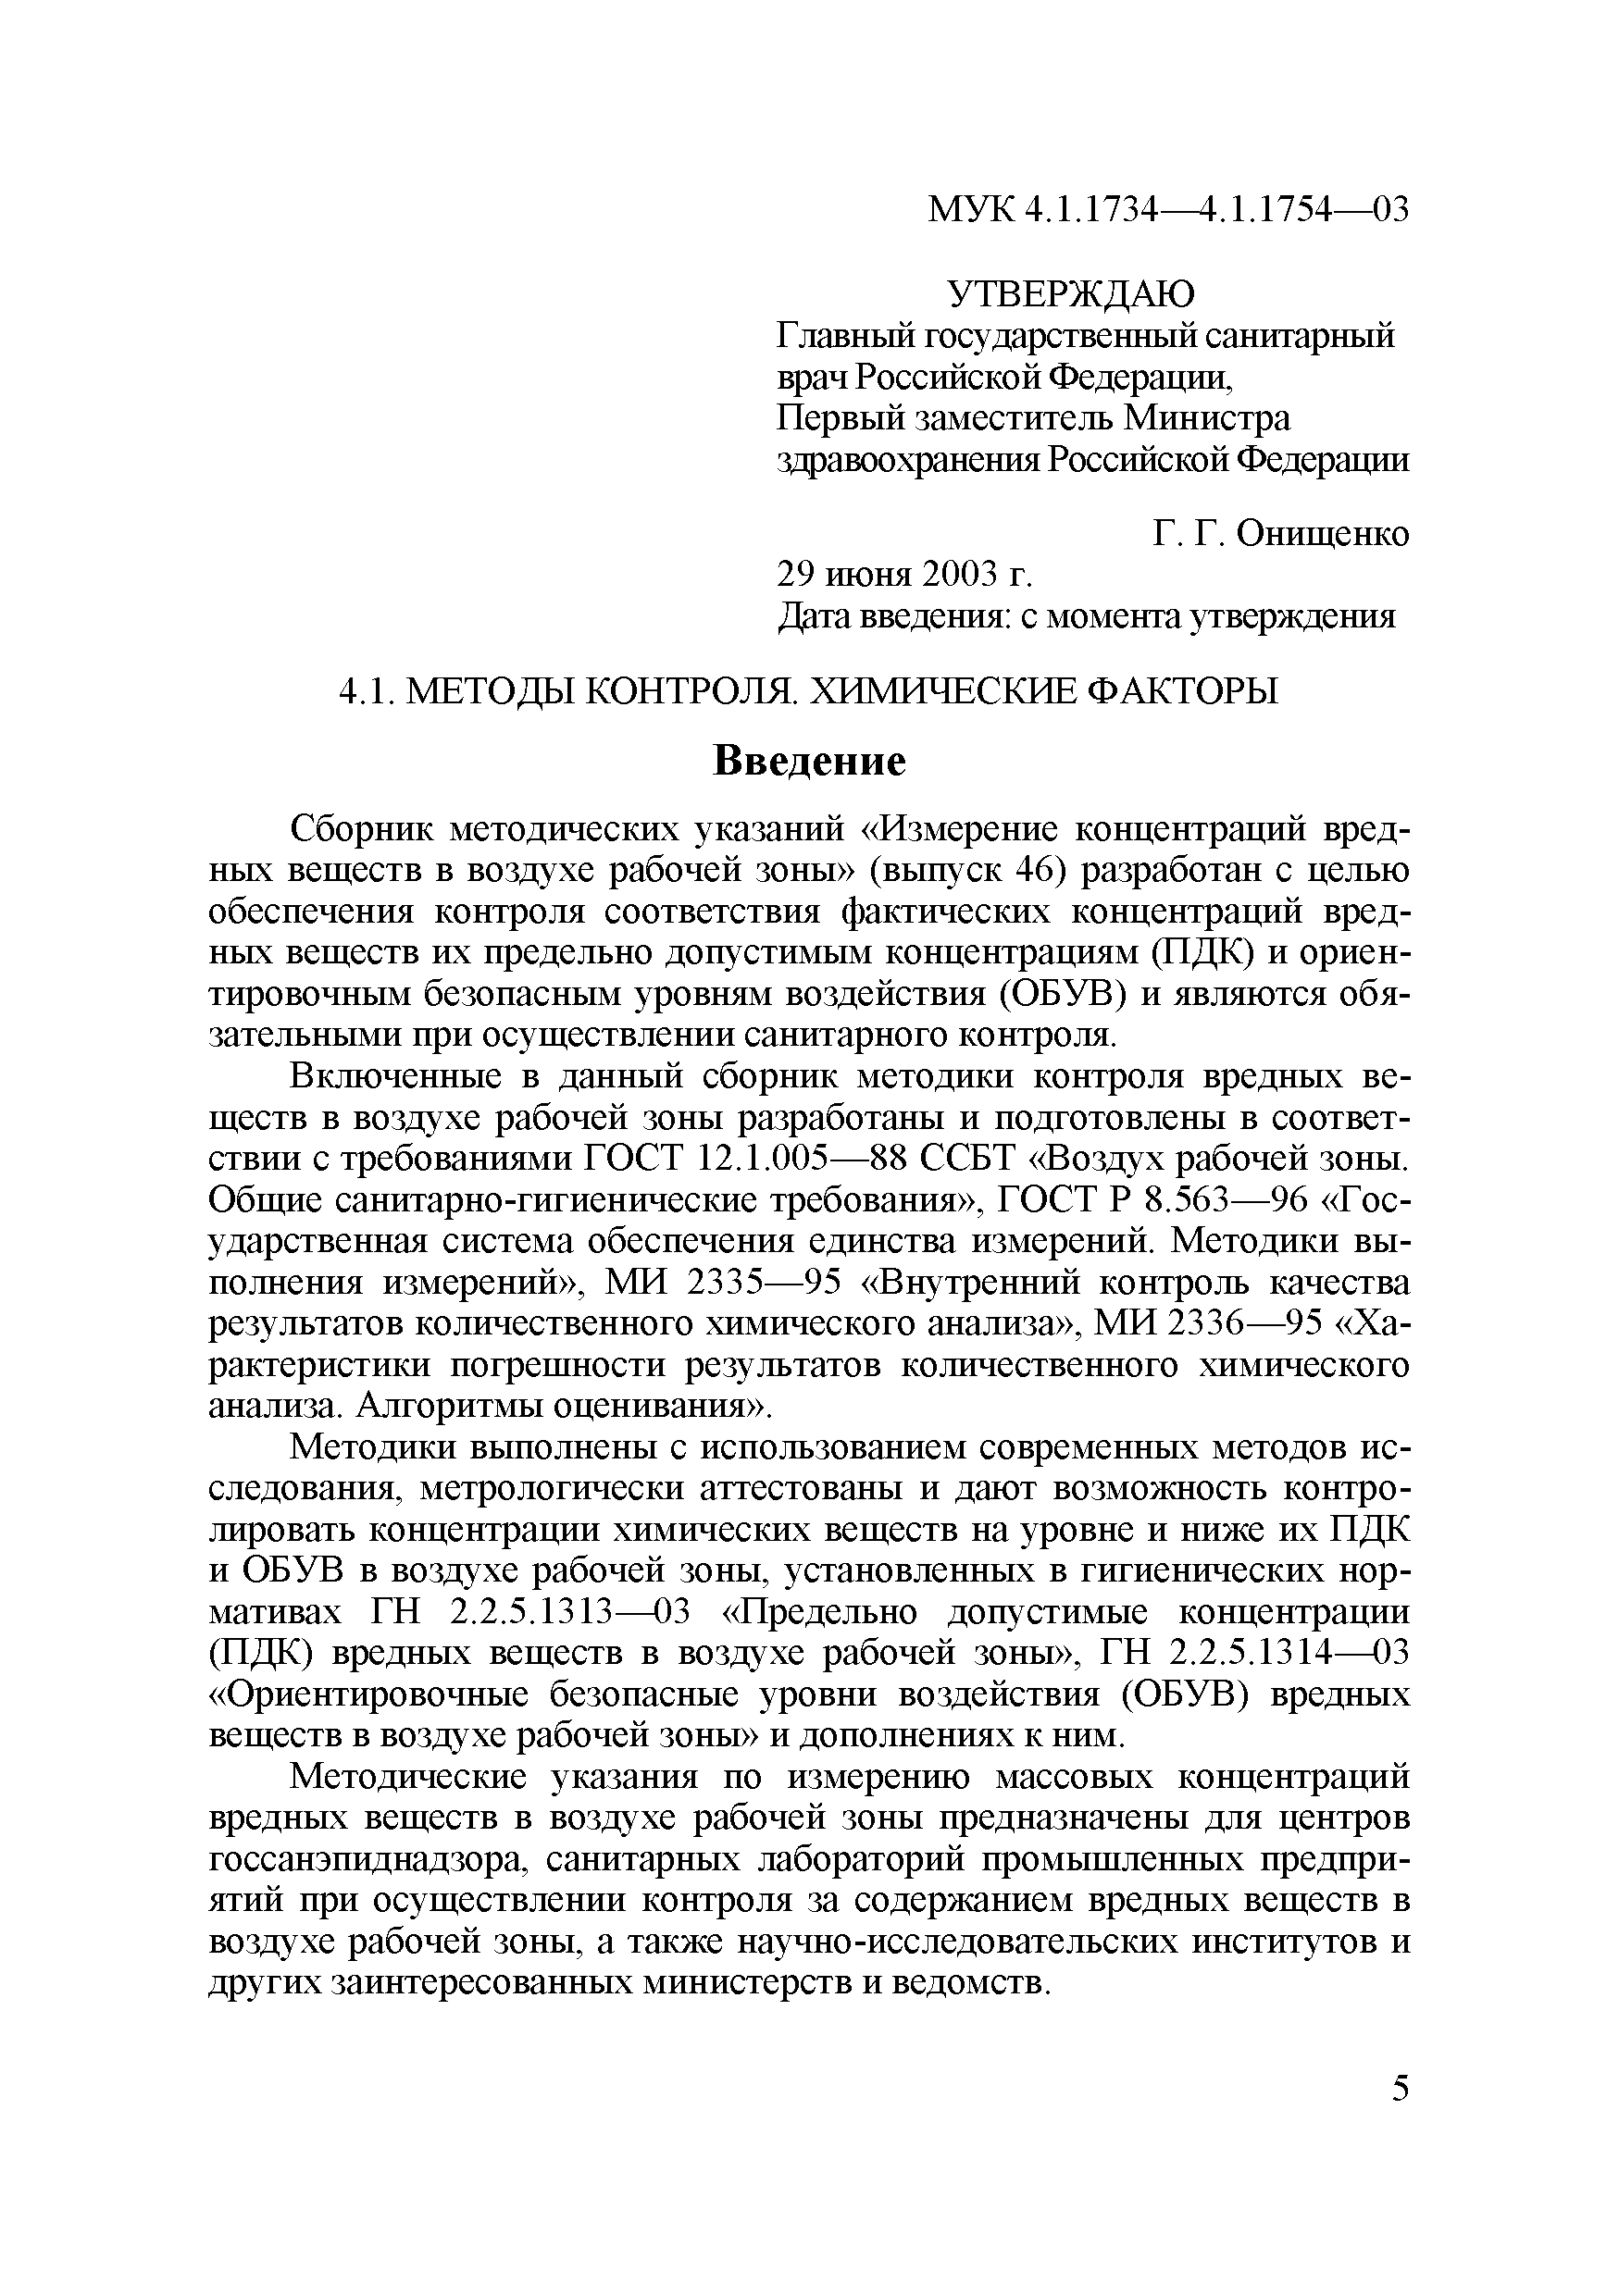 МУК 4.1.1741-03